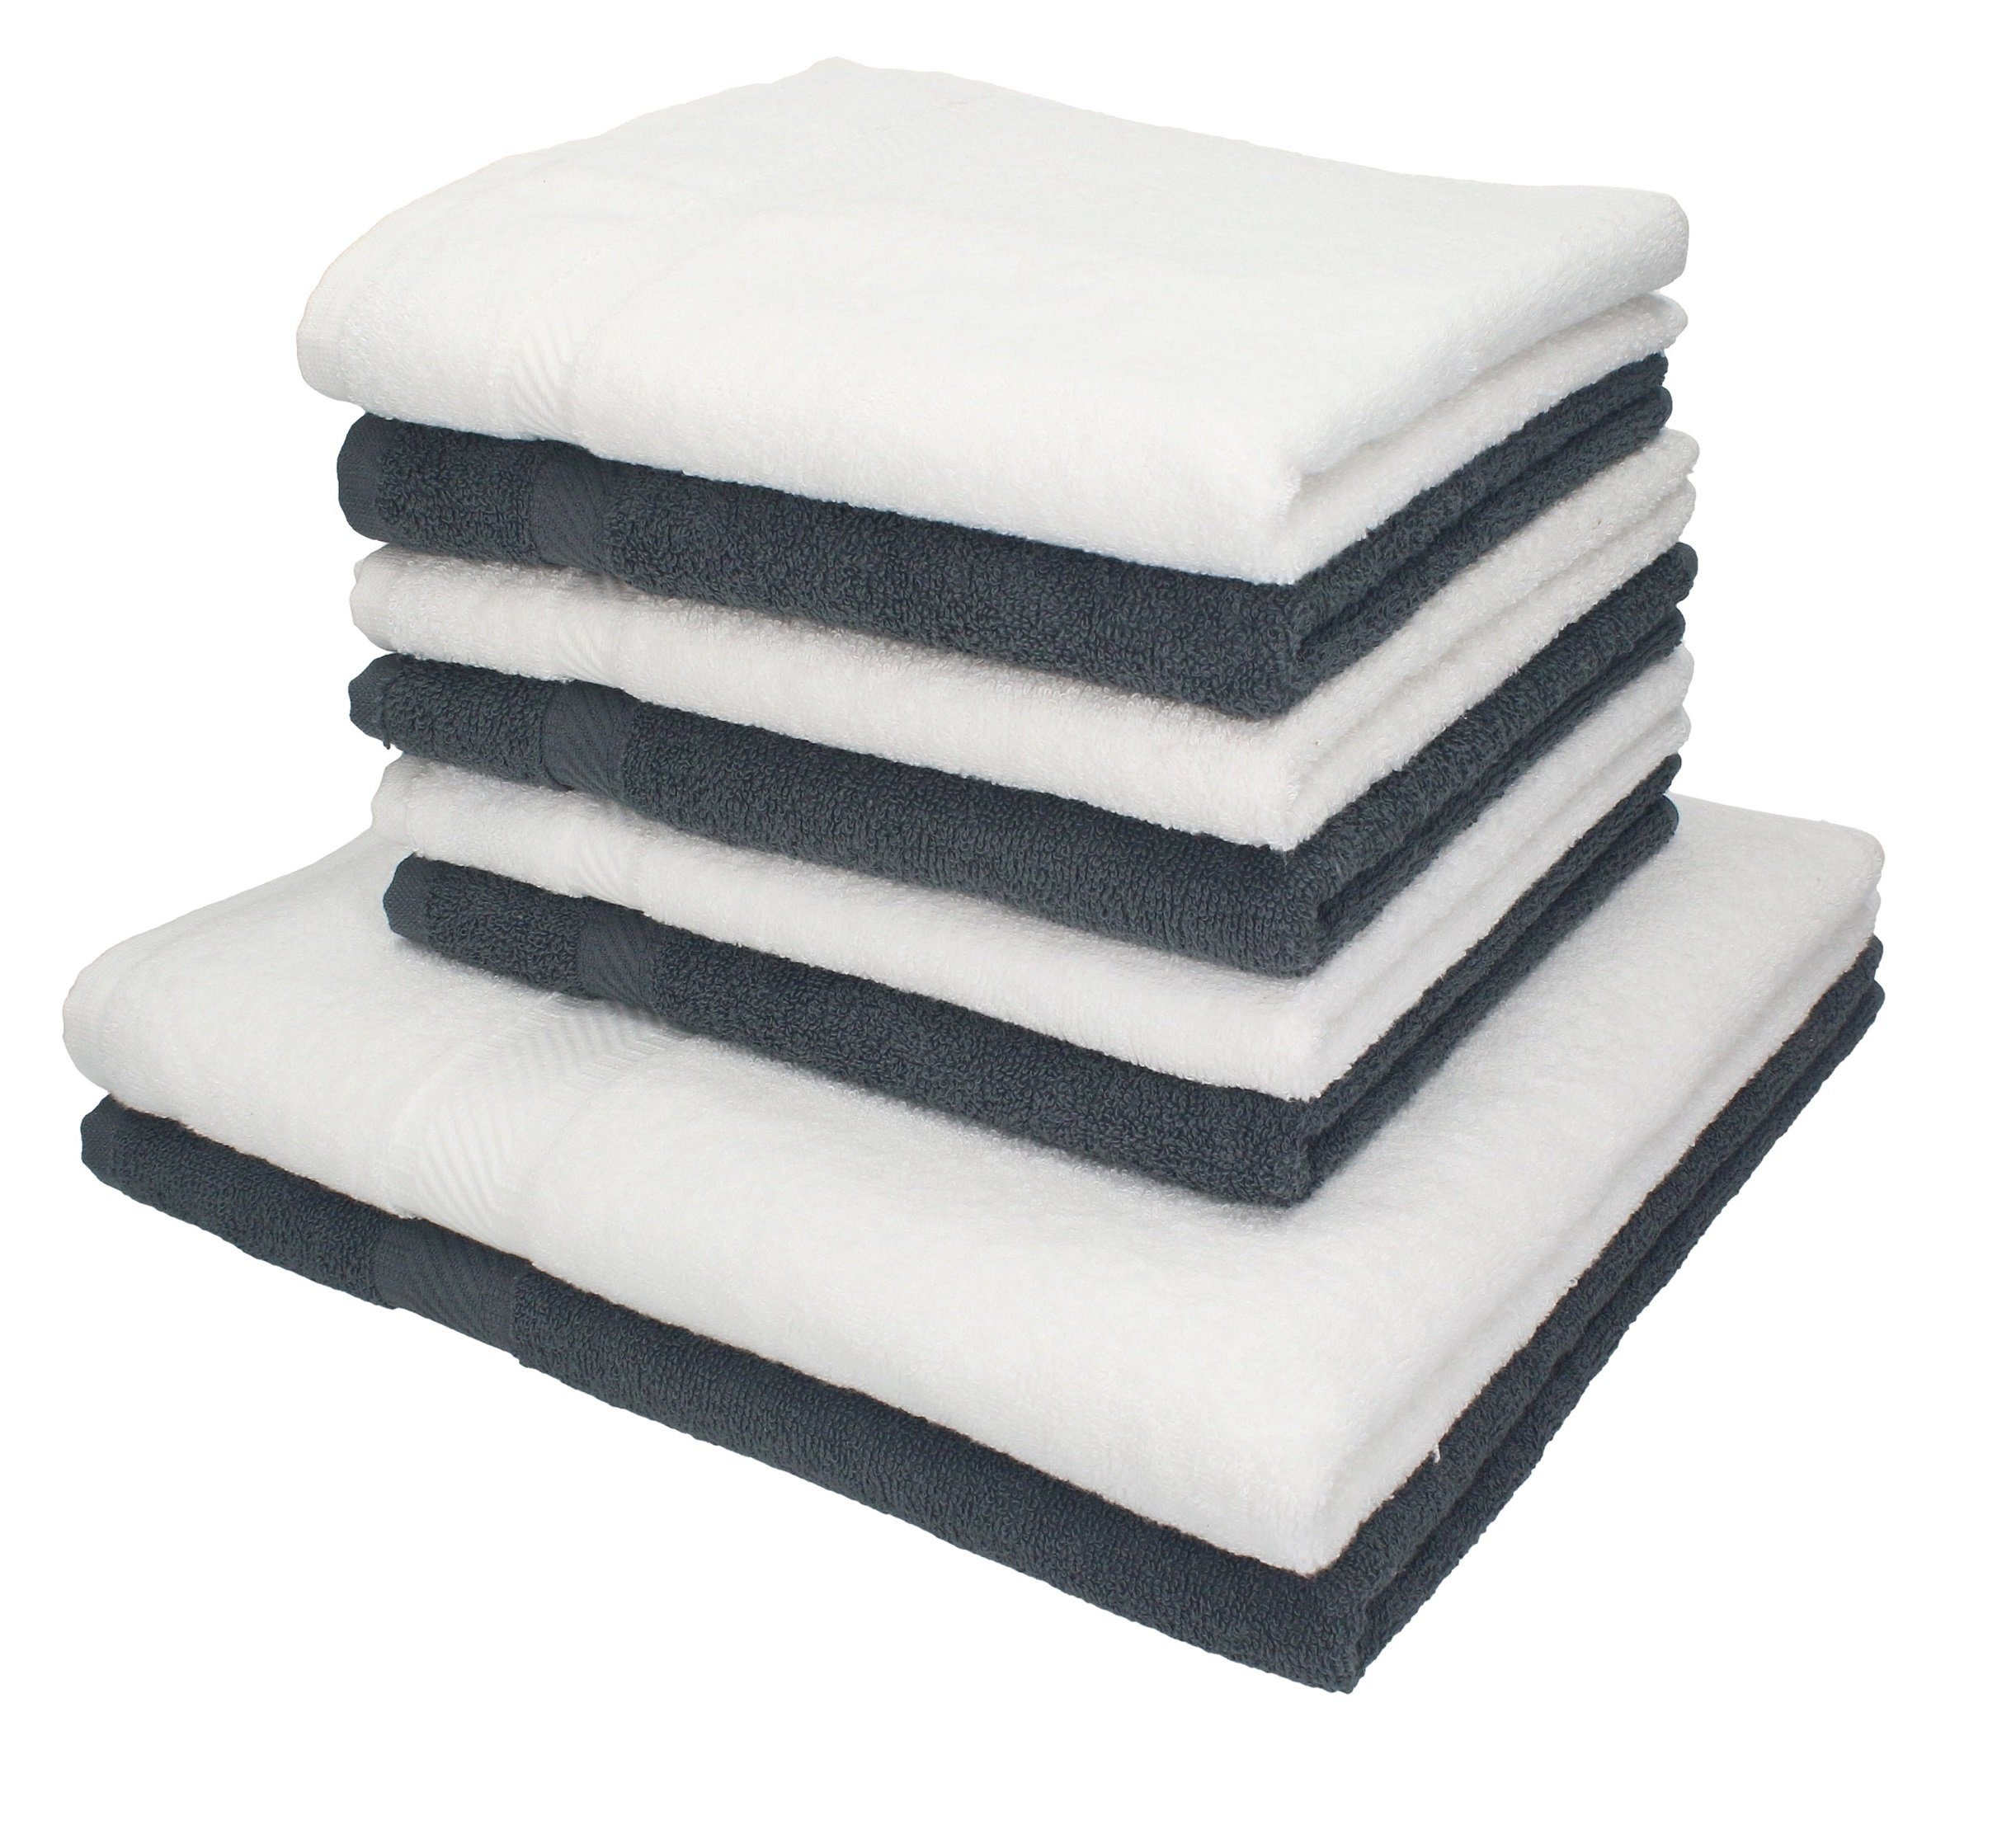 Betz Handtuch Set 8-tlg. Handtuch-Set Palermo Farbe weiß und anthrazit, 100% Baumwolle | Handtuch-Sets